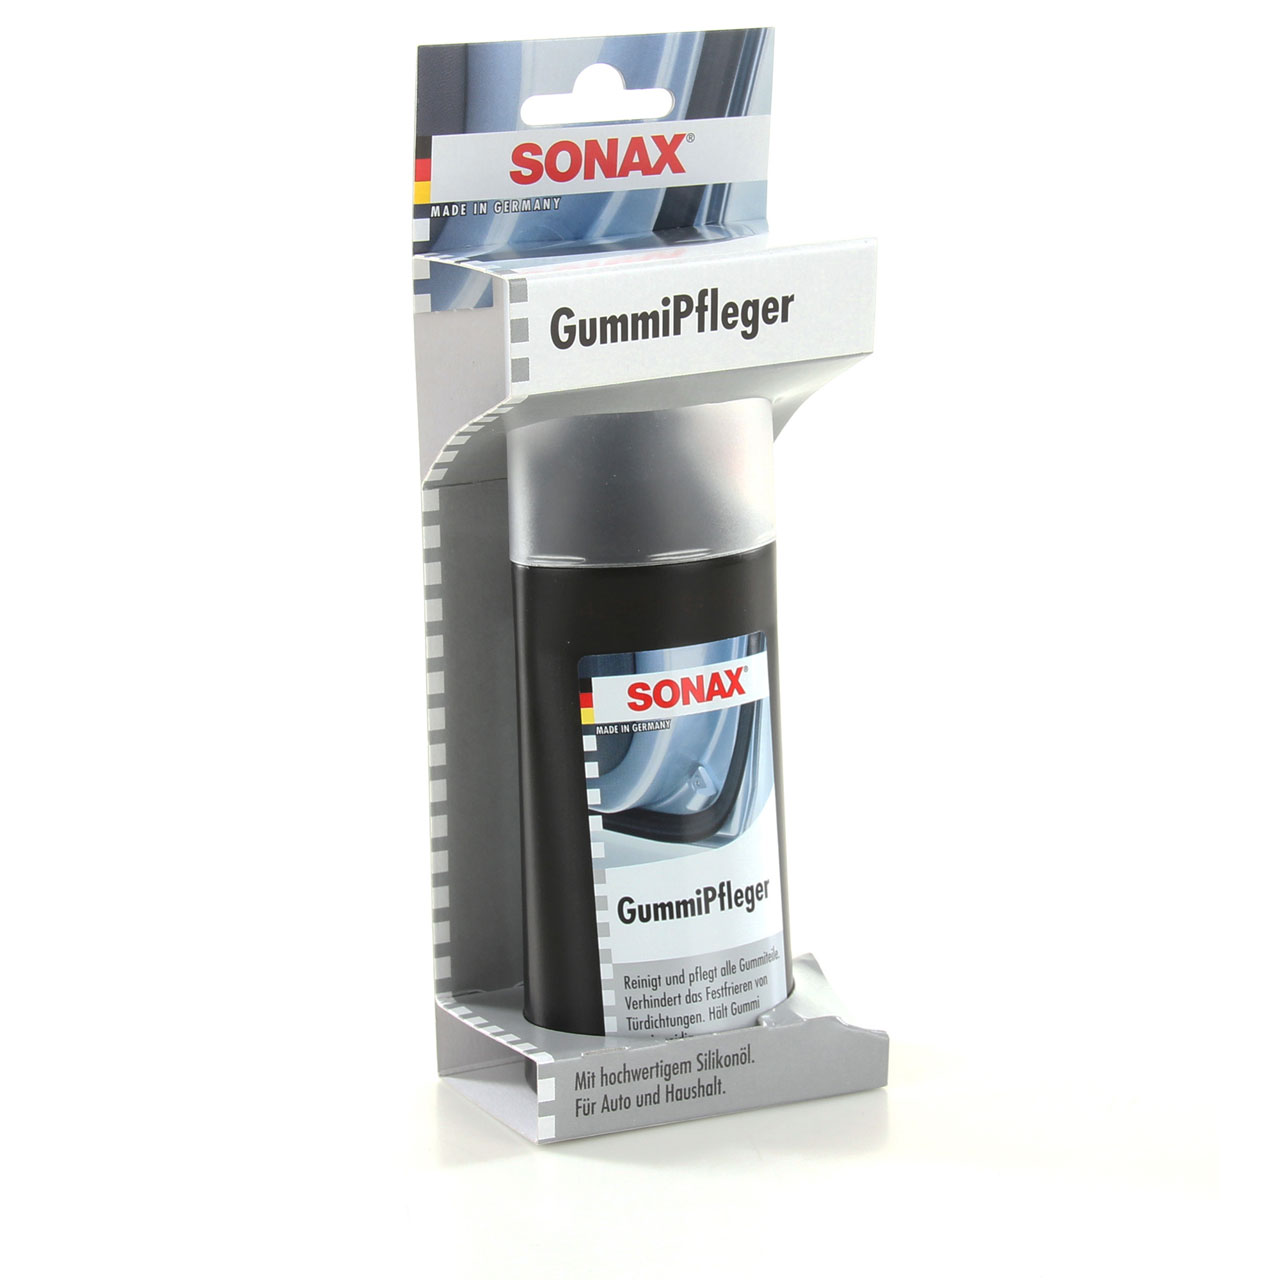 SONAX GummiPfleger mit hochwertigem Silikonöl für Auto+Haushalt 100ml 340000